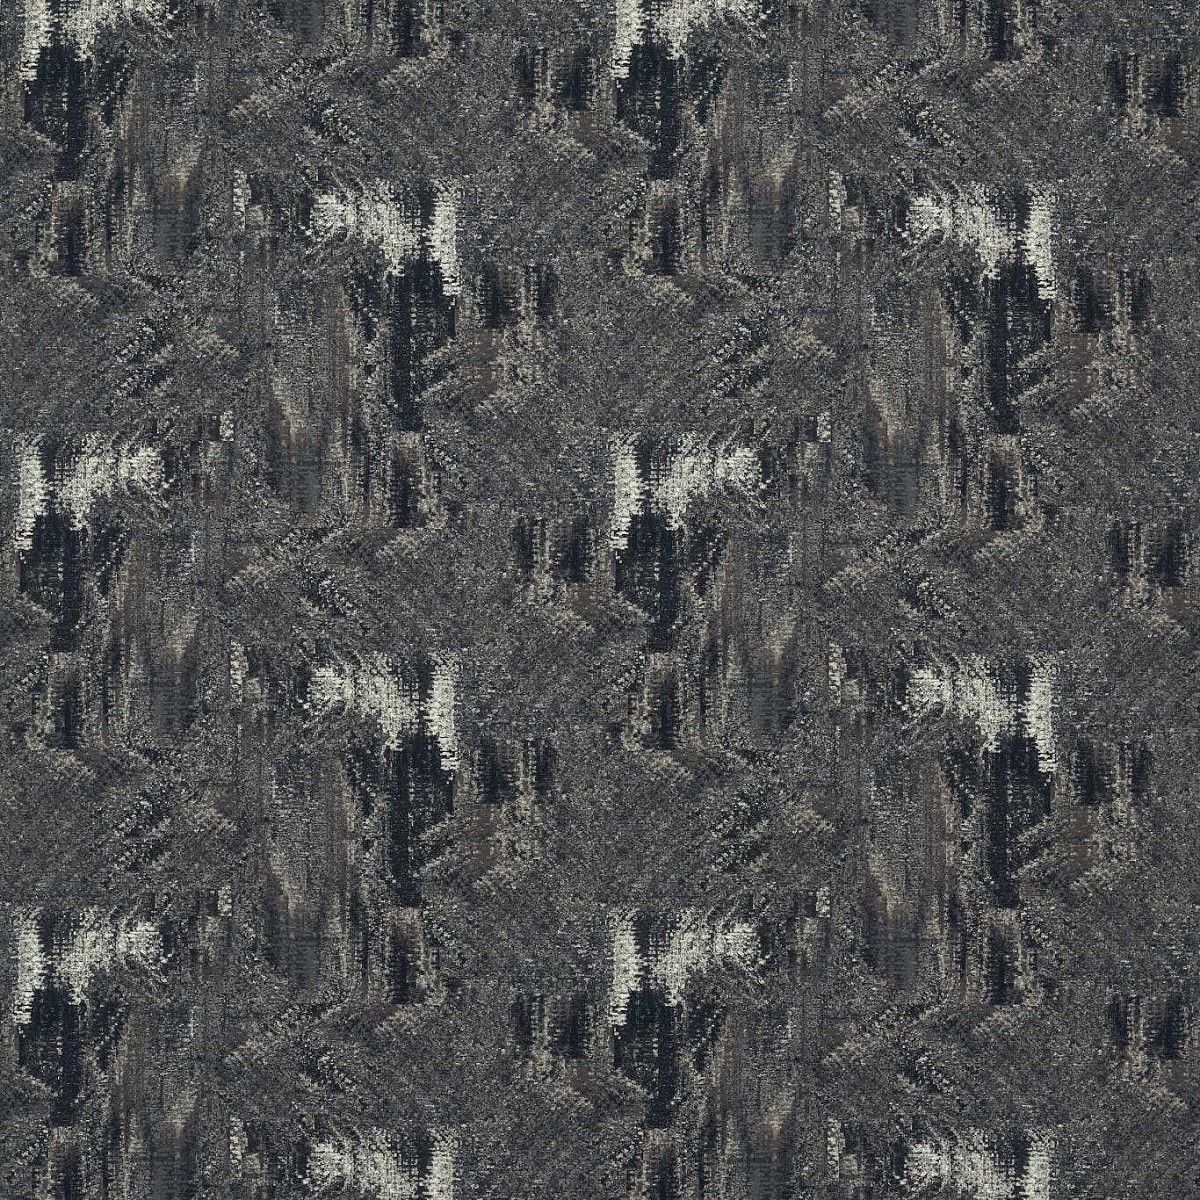 Hillcrest Noir Fabric by Studio G